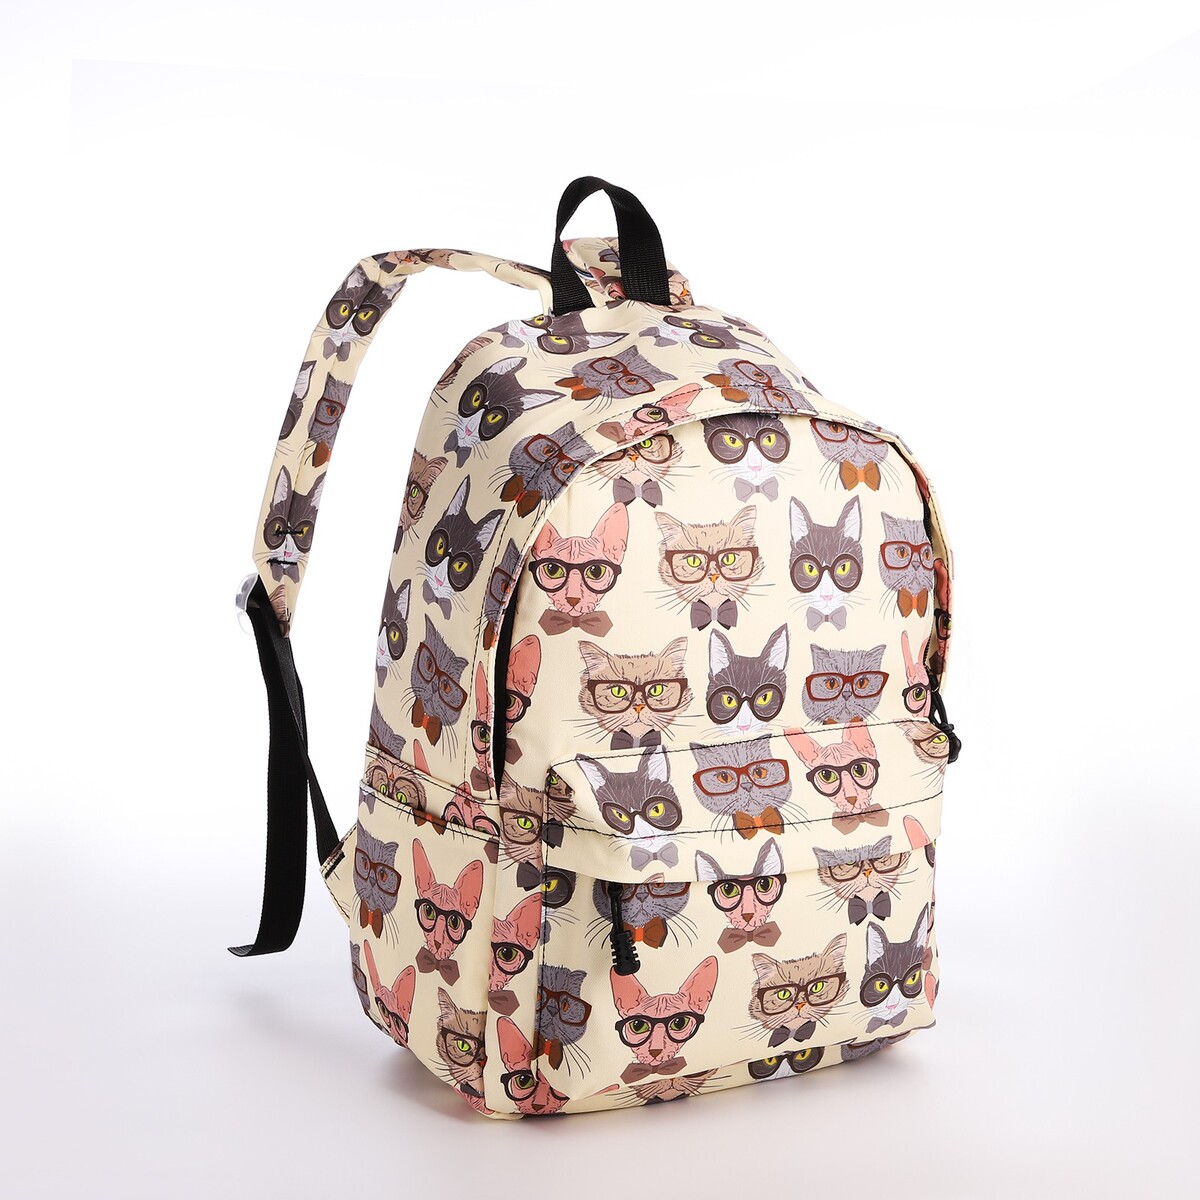 Рюкзак школьный из текстиля на молнии, 4 кармана, кошелек, цвет бежевый рюкзак молодежный из текстиля на молнии 3 кармана серо бежевый